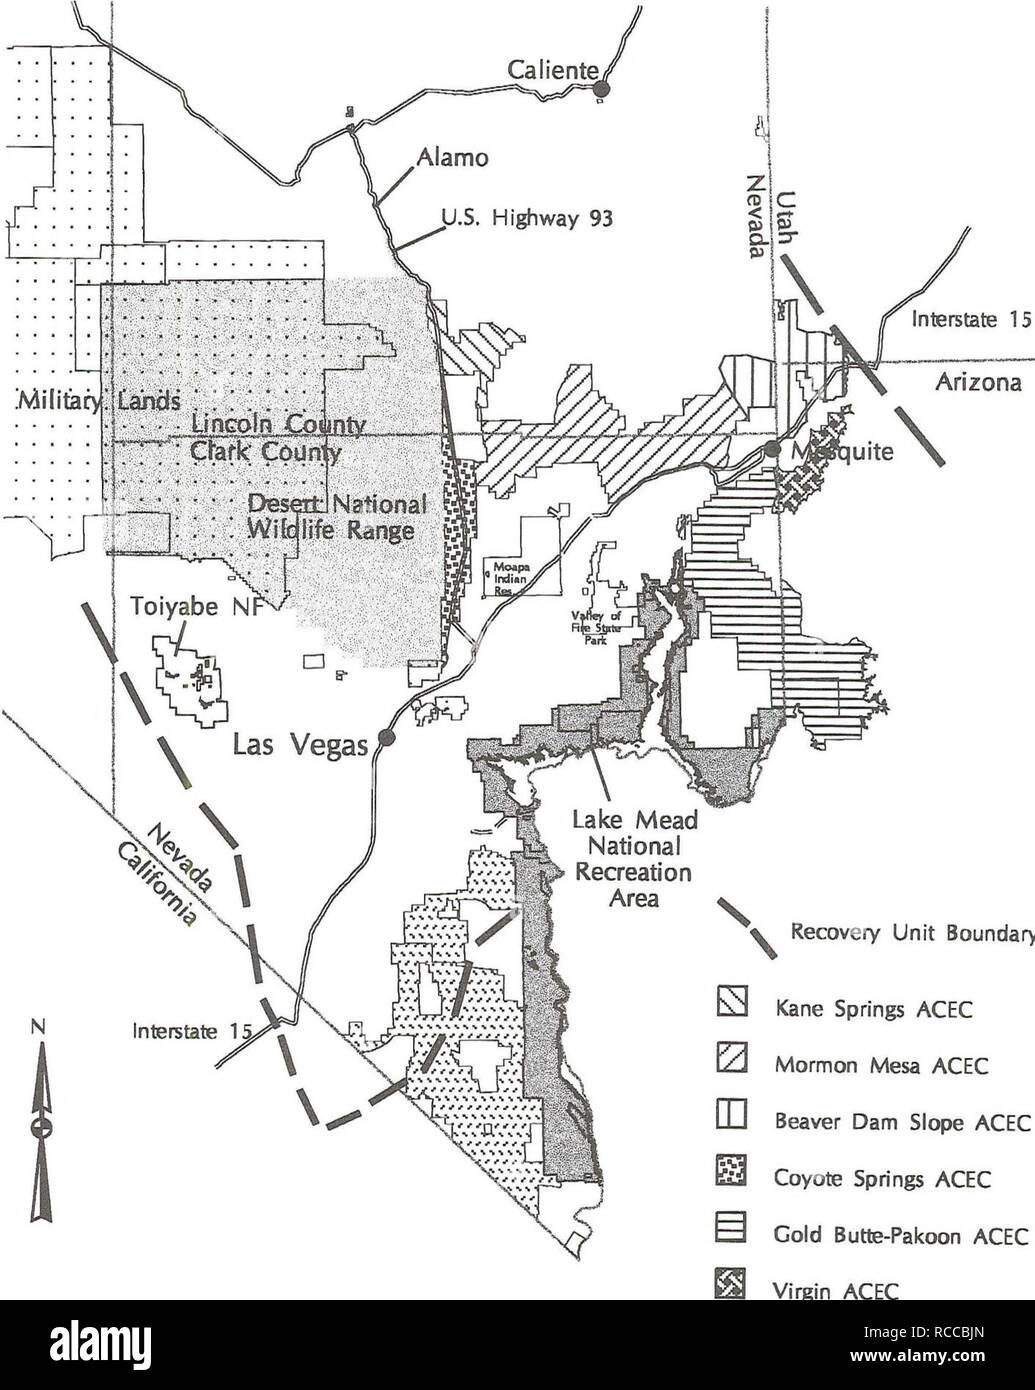 . Proyecto de modificación del Plan Marco de Gestión caliente y la declaración de impacto ambiental para la gestión del hábitat de la tortuga del desierto. Tortuga del desierto; especies amenazadas; la mejora del hábitat de la vida silvestre; uso de la tierra; las tierras públicas. Mapa 4-1 Noreste de Mojave Desert propuesto la unidad de recuperación de áreas de gestión de la tortuga. 20 20 40 Millas Zl 4-75 V Límite unidad de Recuperación 0 Kane Springs ACEC I2j Mormon Mesa ACEC IB Beaver Dam pendiente ACEC Coyote Springs ACEC frío Butte-Pakoon ACEC ACEC ACEC Piute-Eldorado virgen. Por favor tenga en cuenta que estas imágenes son extraídas de la página escaneada imágenes que pueden haber sido digitalmente e Foto de stock